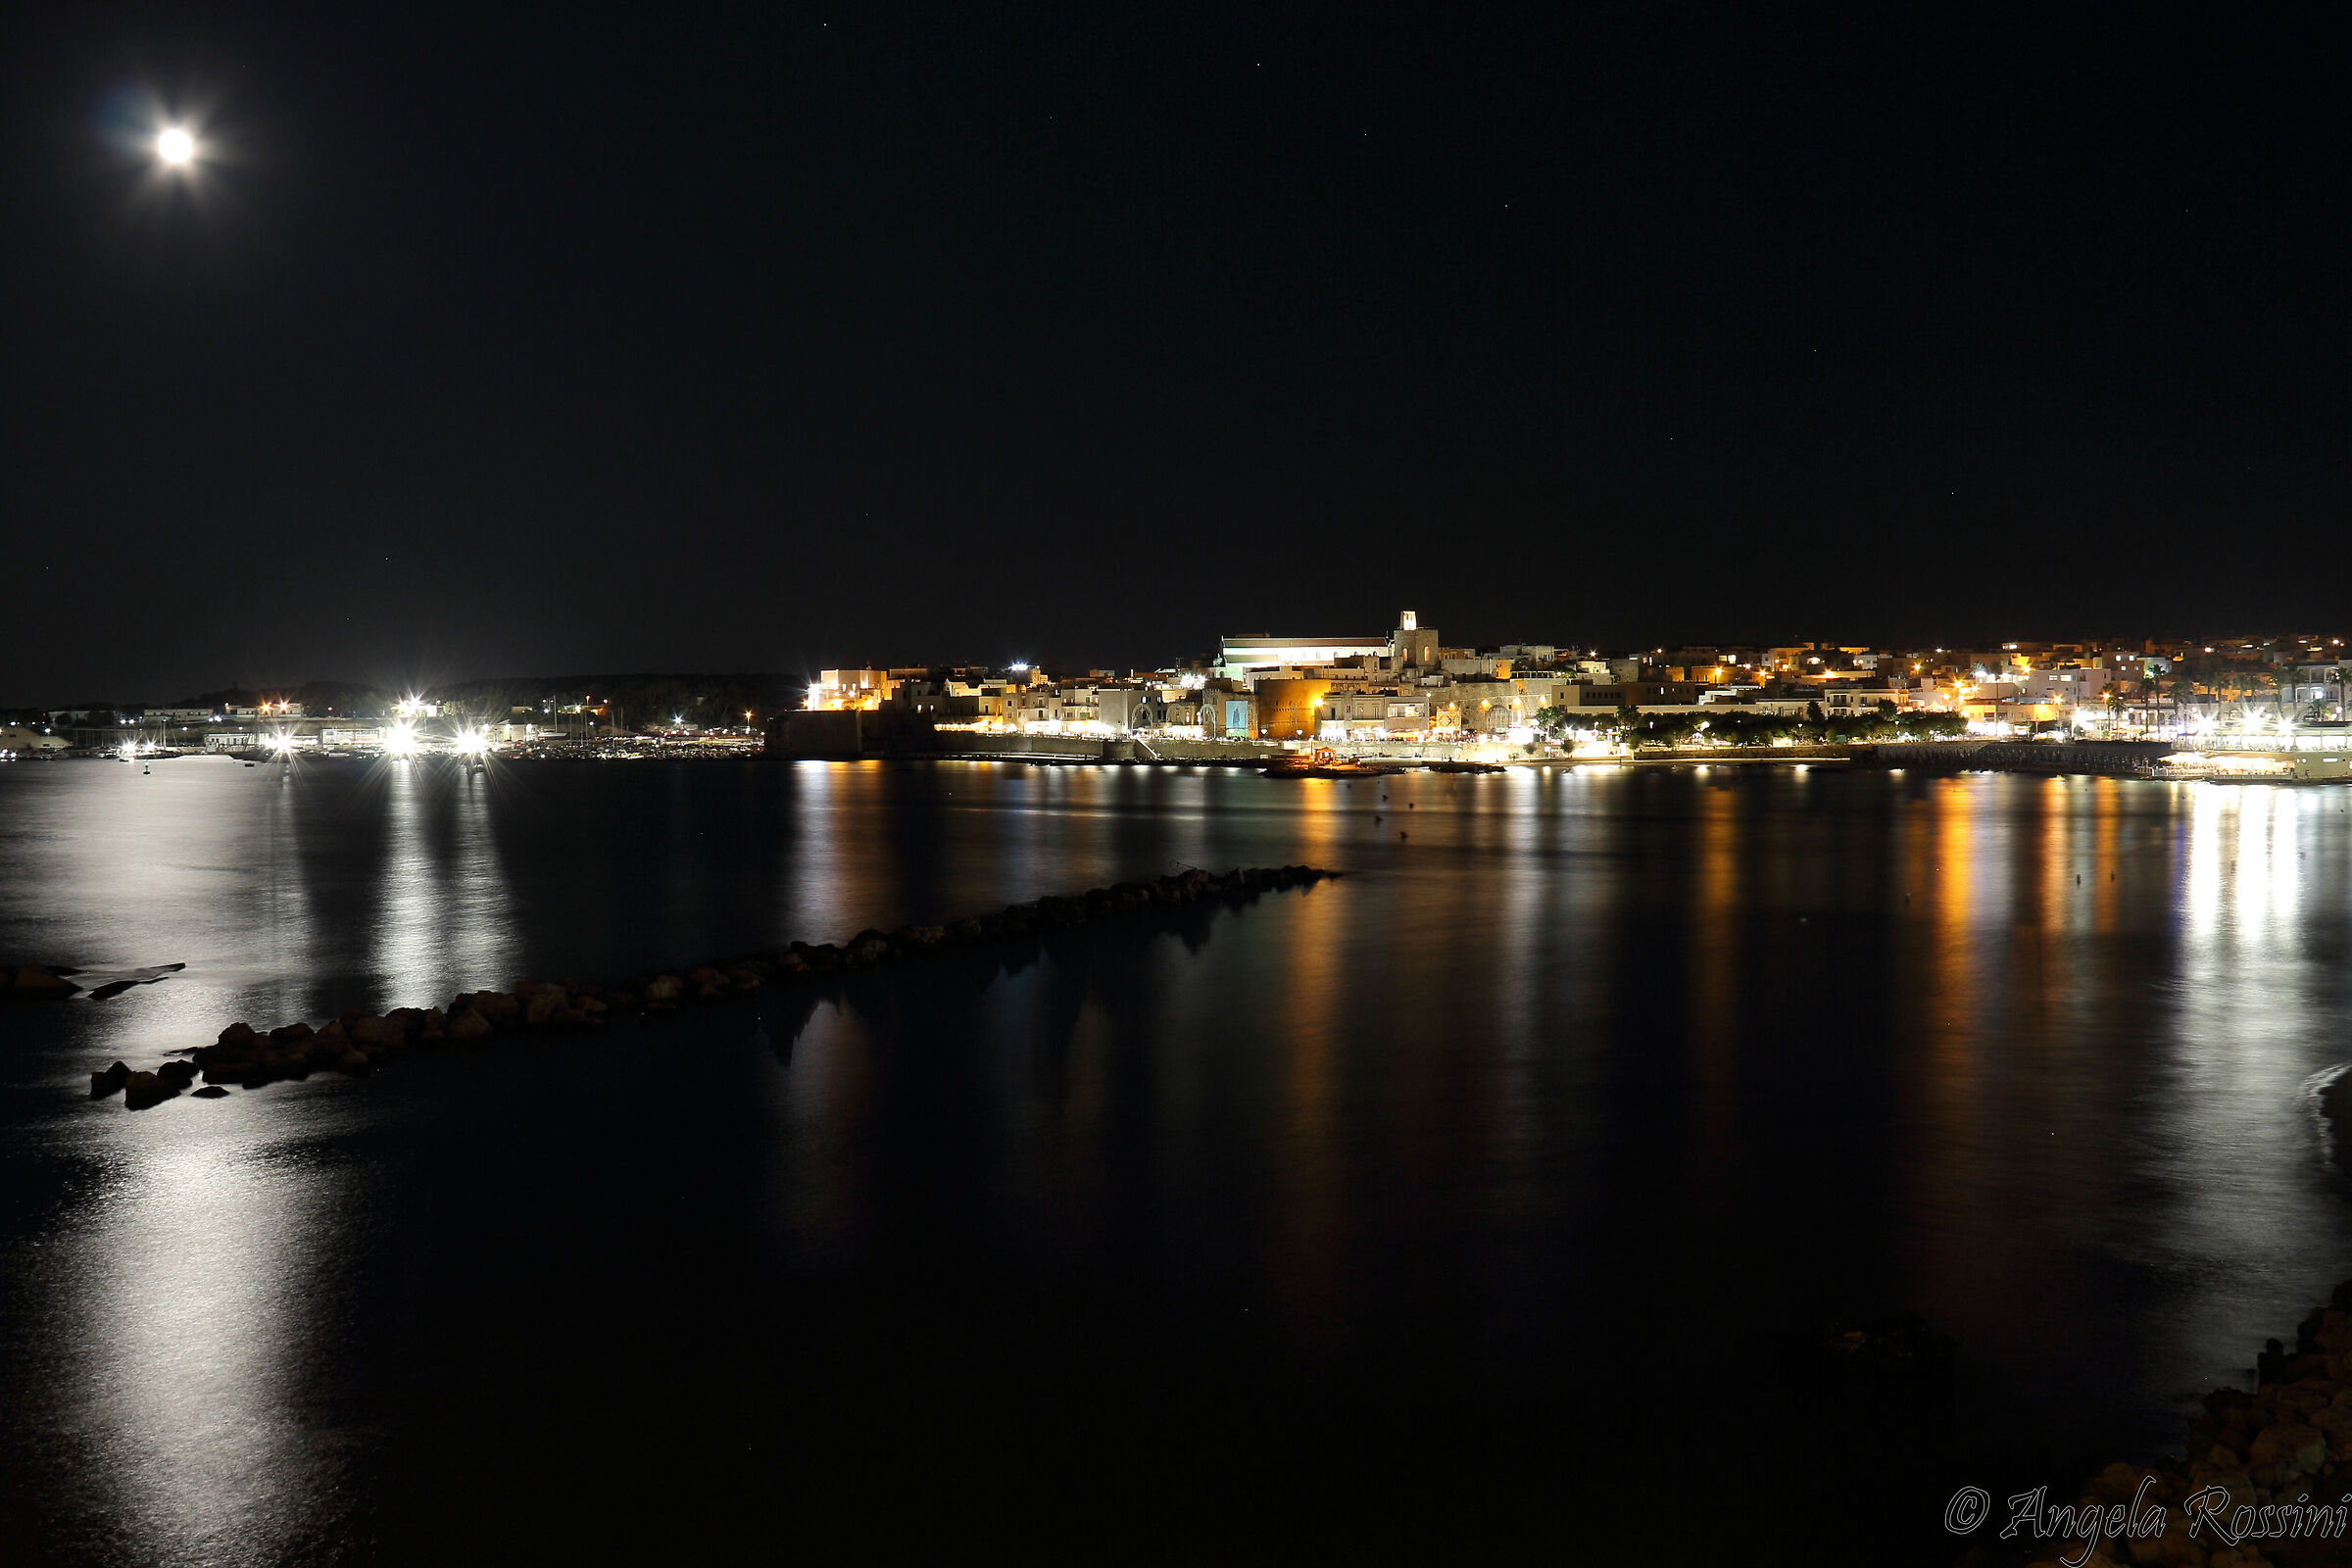 Otranto in the evening...